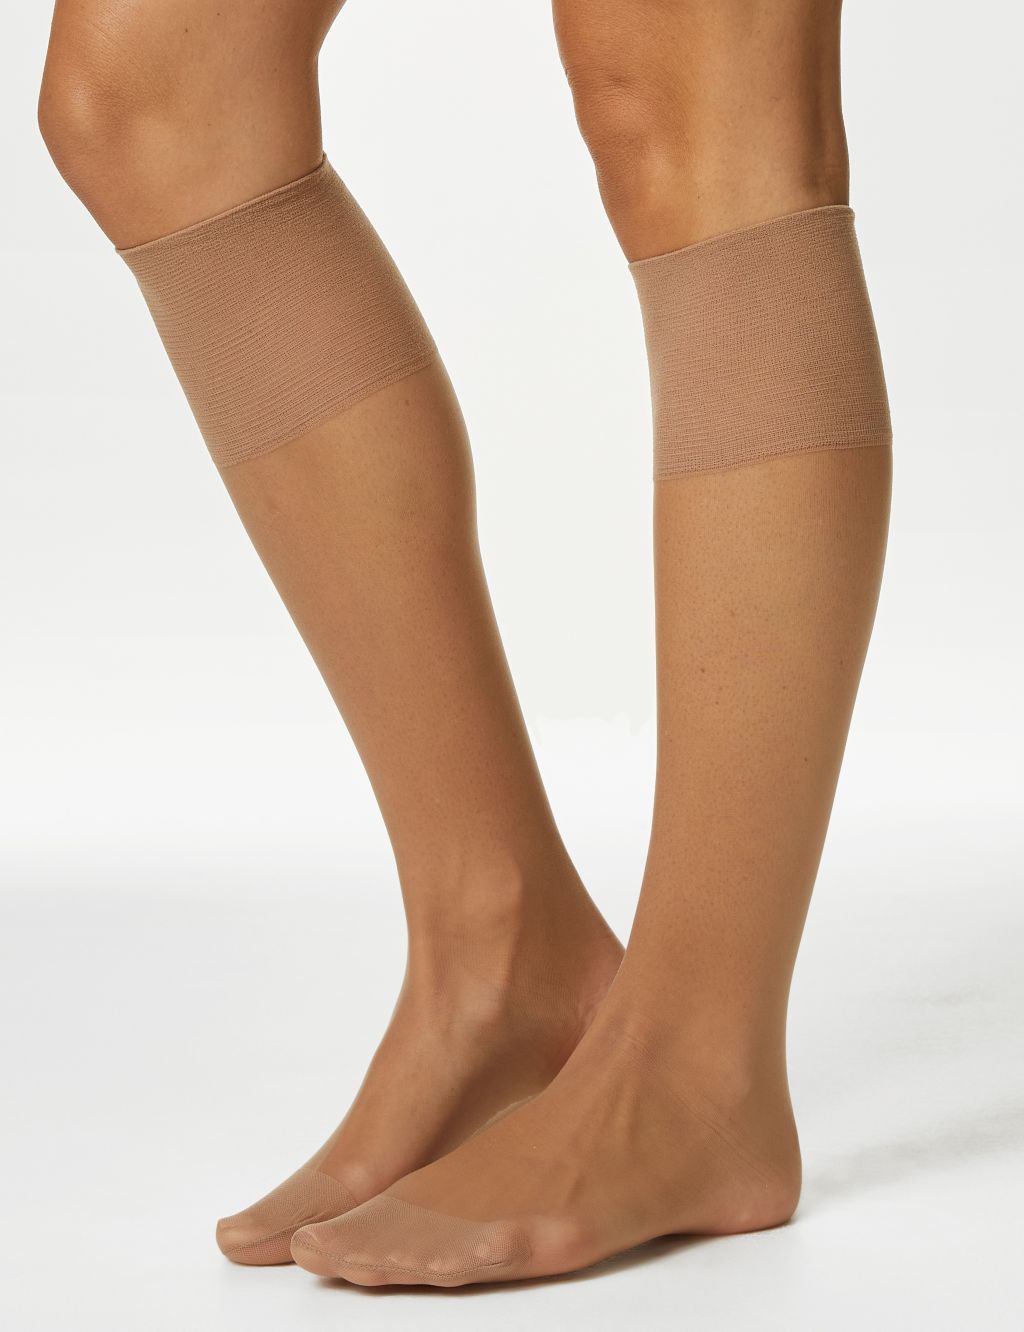 10 Pairs Women Nylon Elastic Short Ankle Sheer Stockings Silk Short Socks  Casual Women Girls Summer Socks 